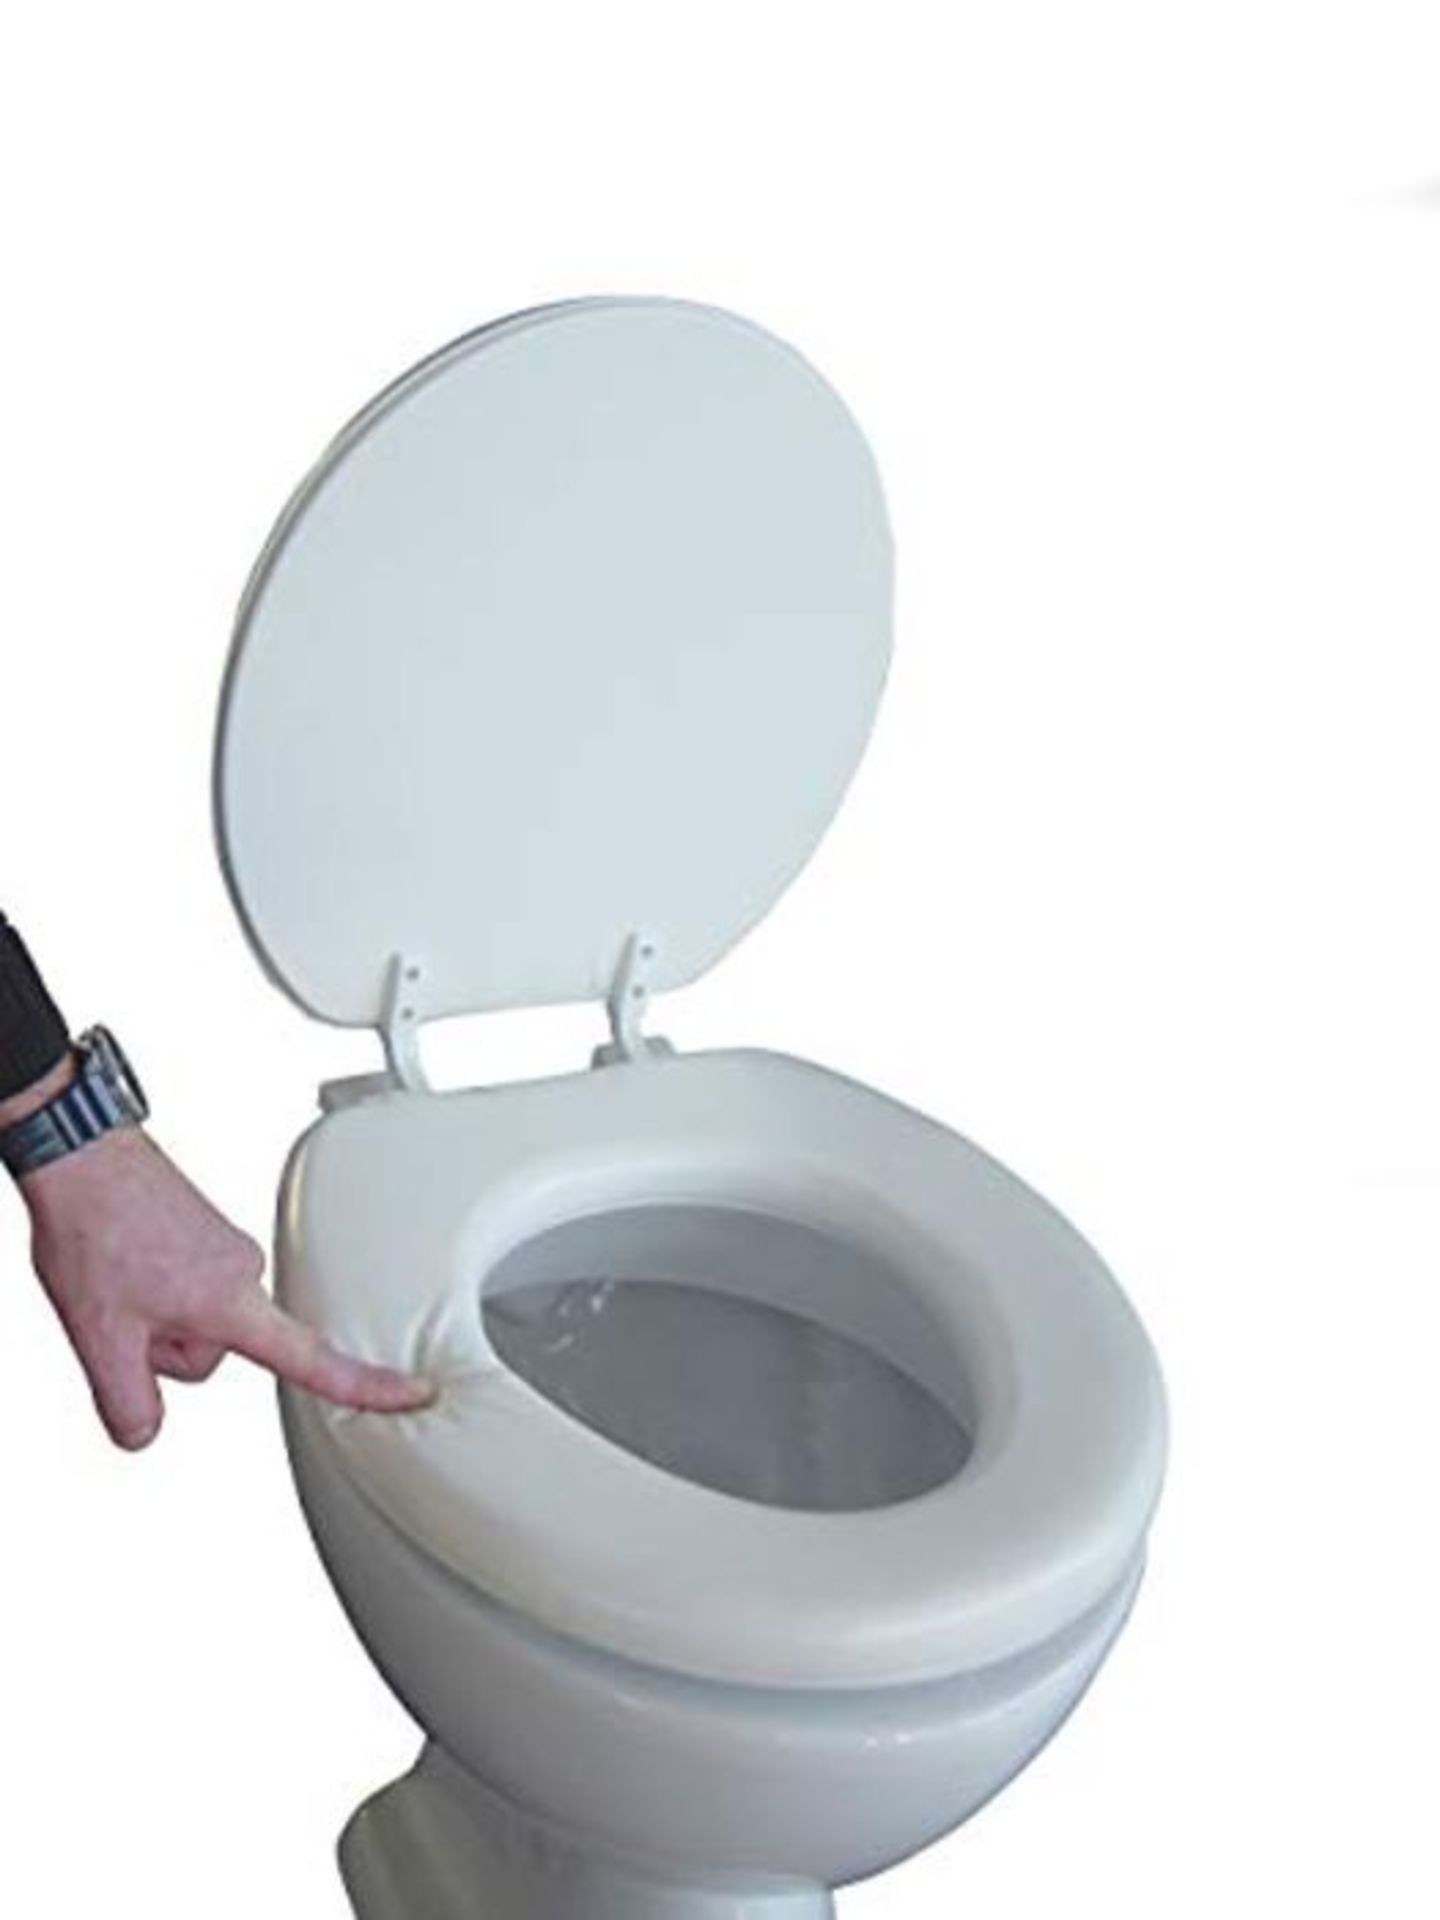 ADOB Soft Toilet seat, White